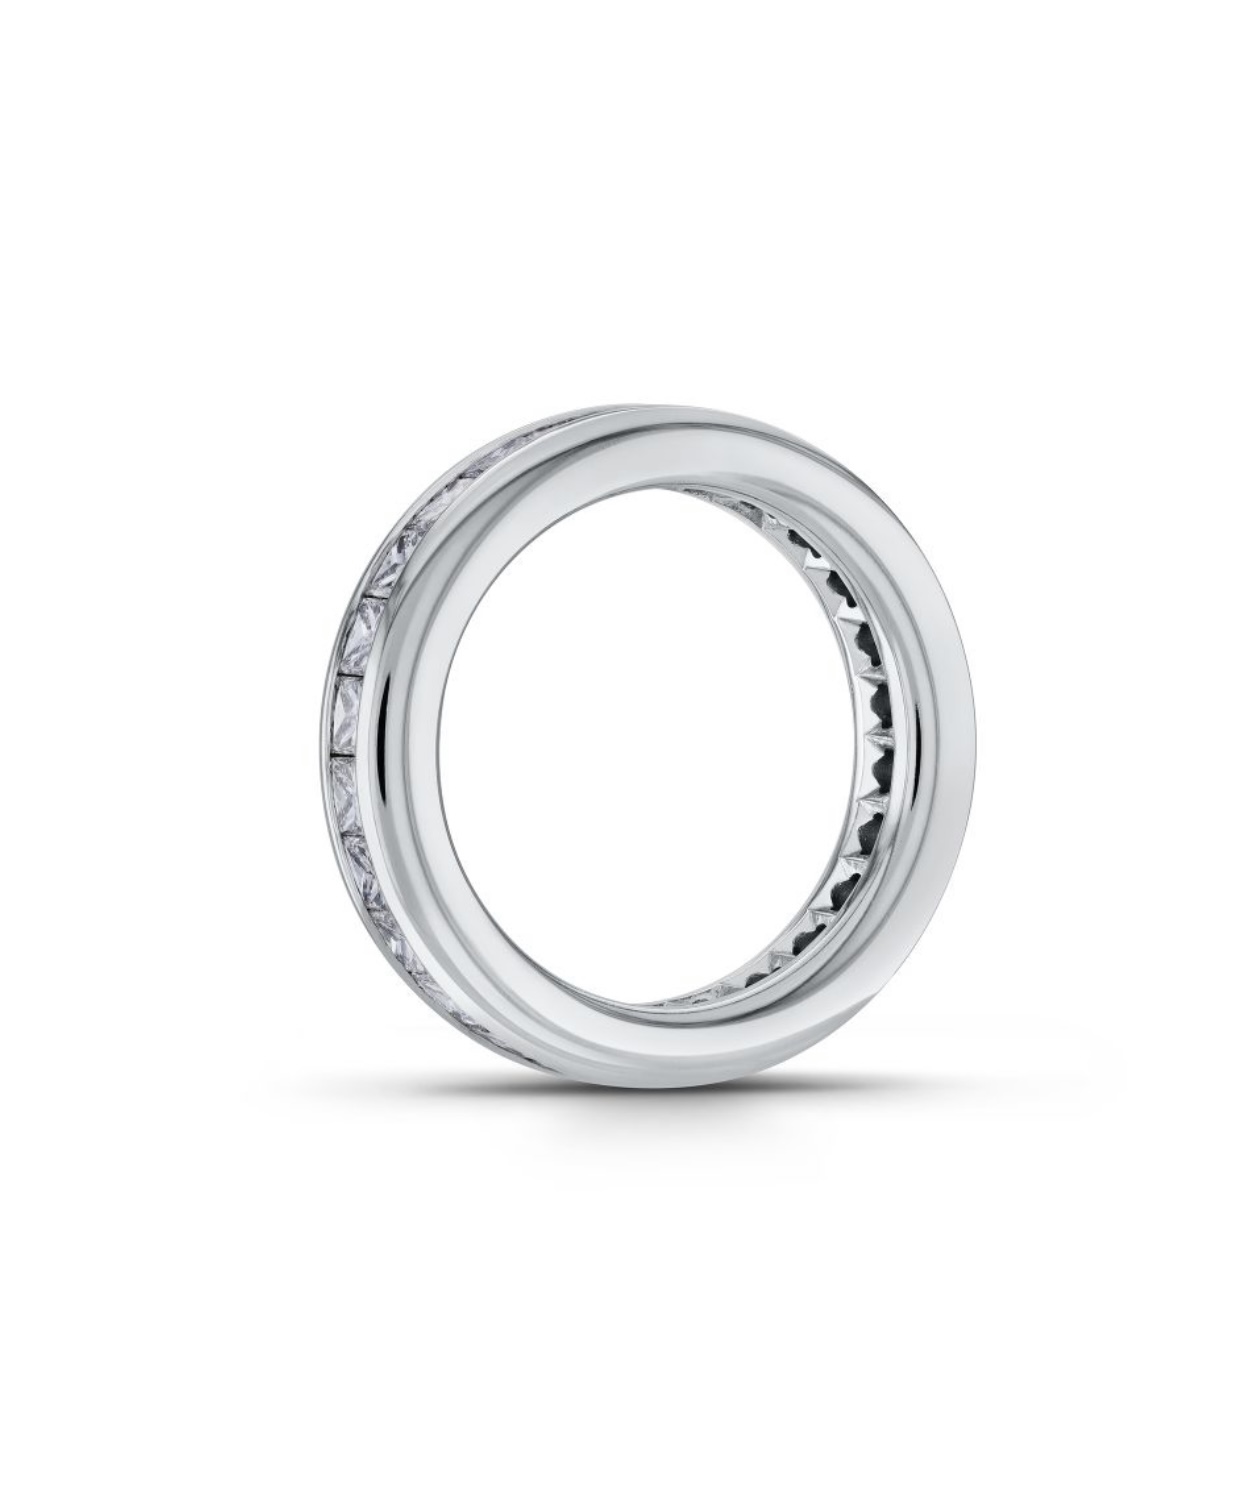 Обручальное кольцо с бриллиантами(2,40 ct.) из платины 950 пробы 